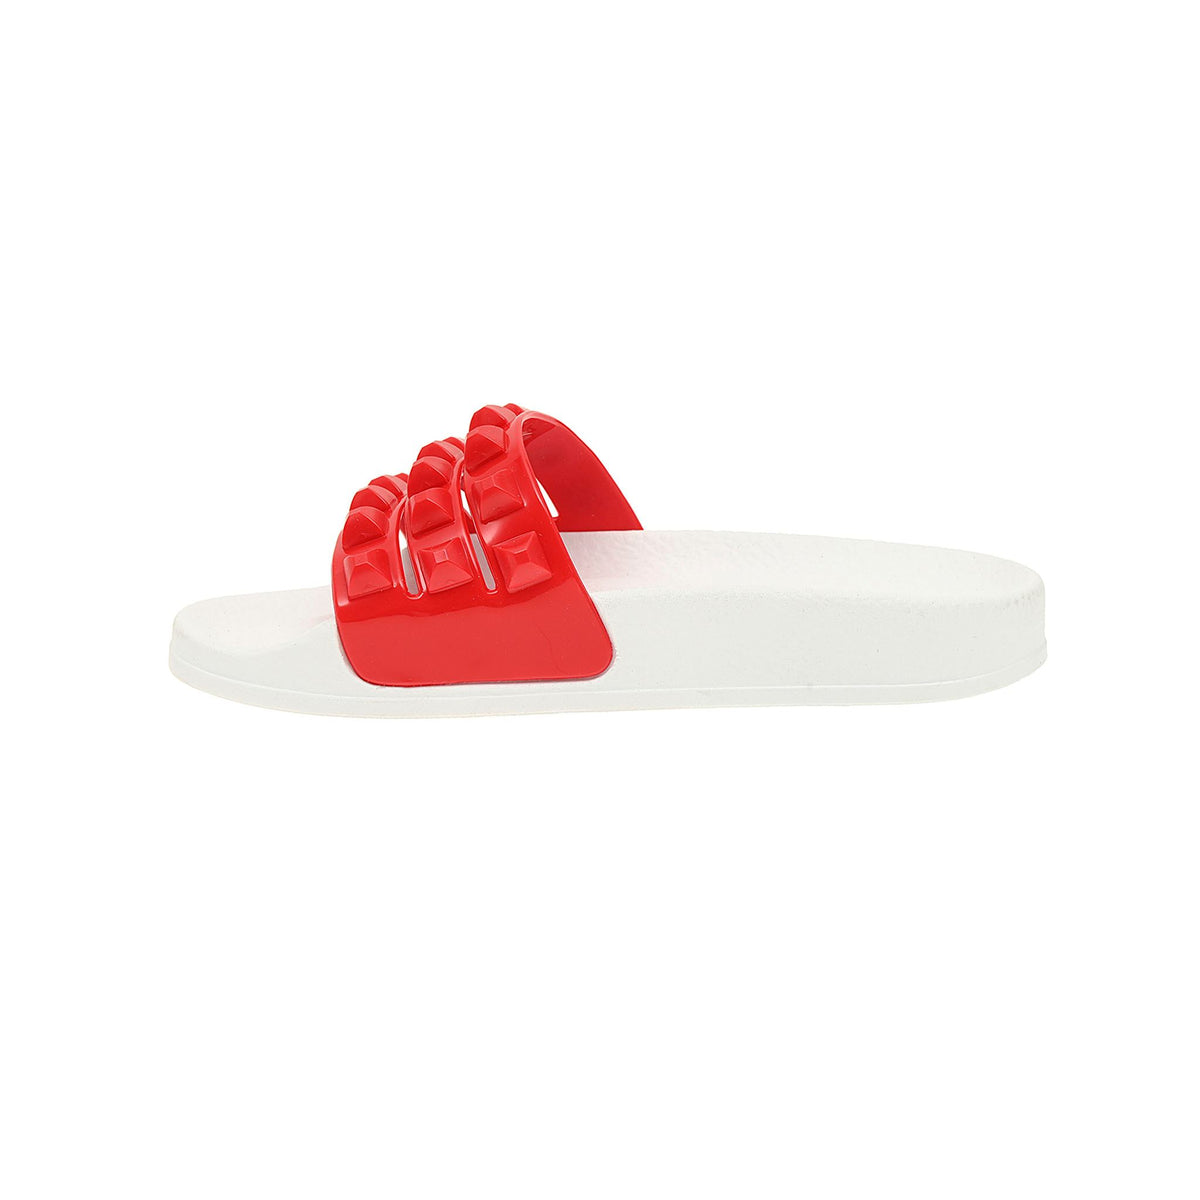 Franco white toddler jelly sandals for beach-loving kids, 3 strap red slides from carmen sol, kids flip-flop minicarmensol.